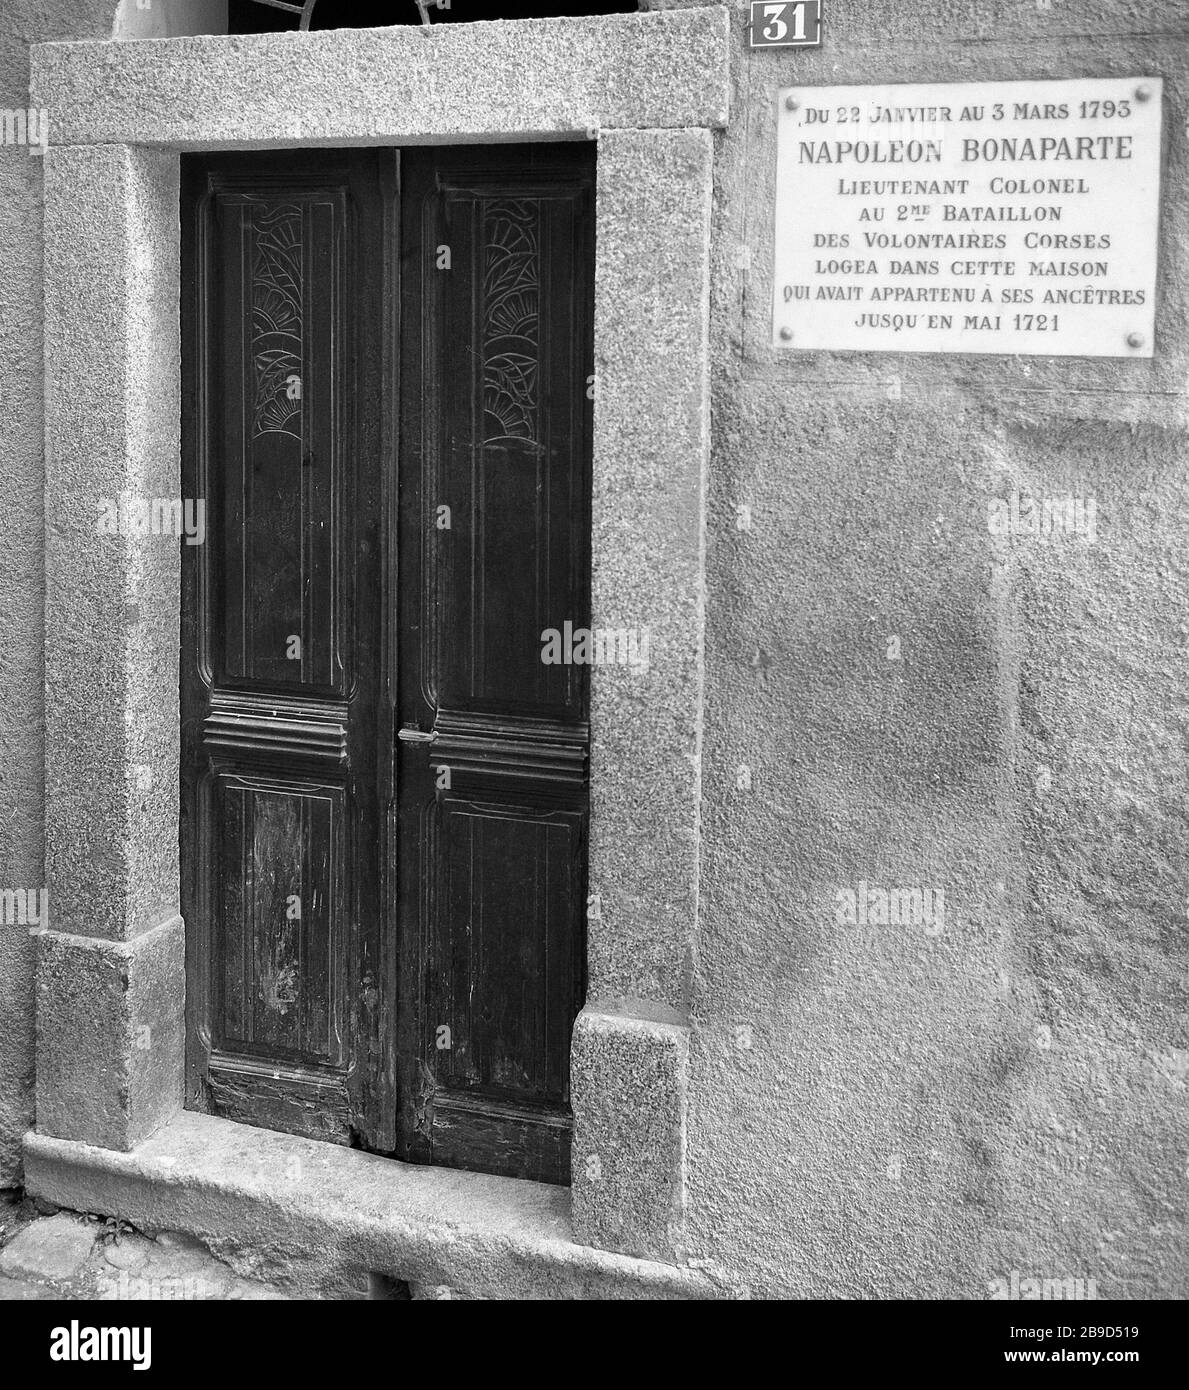 La porte d'entrée de la maison de Bonifacio où Napoléon Bonaparte est resté  en 1793. [traduction automatique] Photo Stock - Alamy